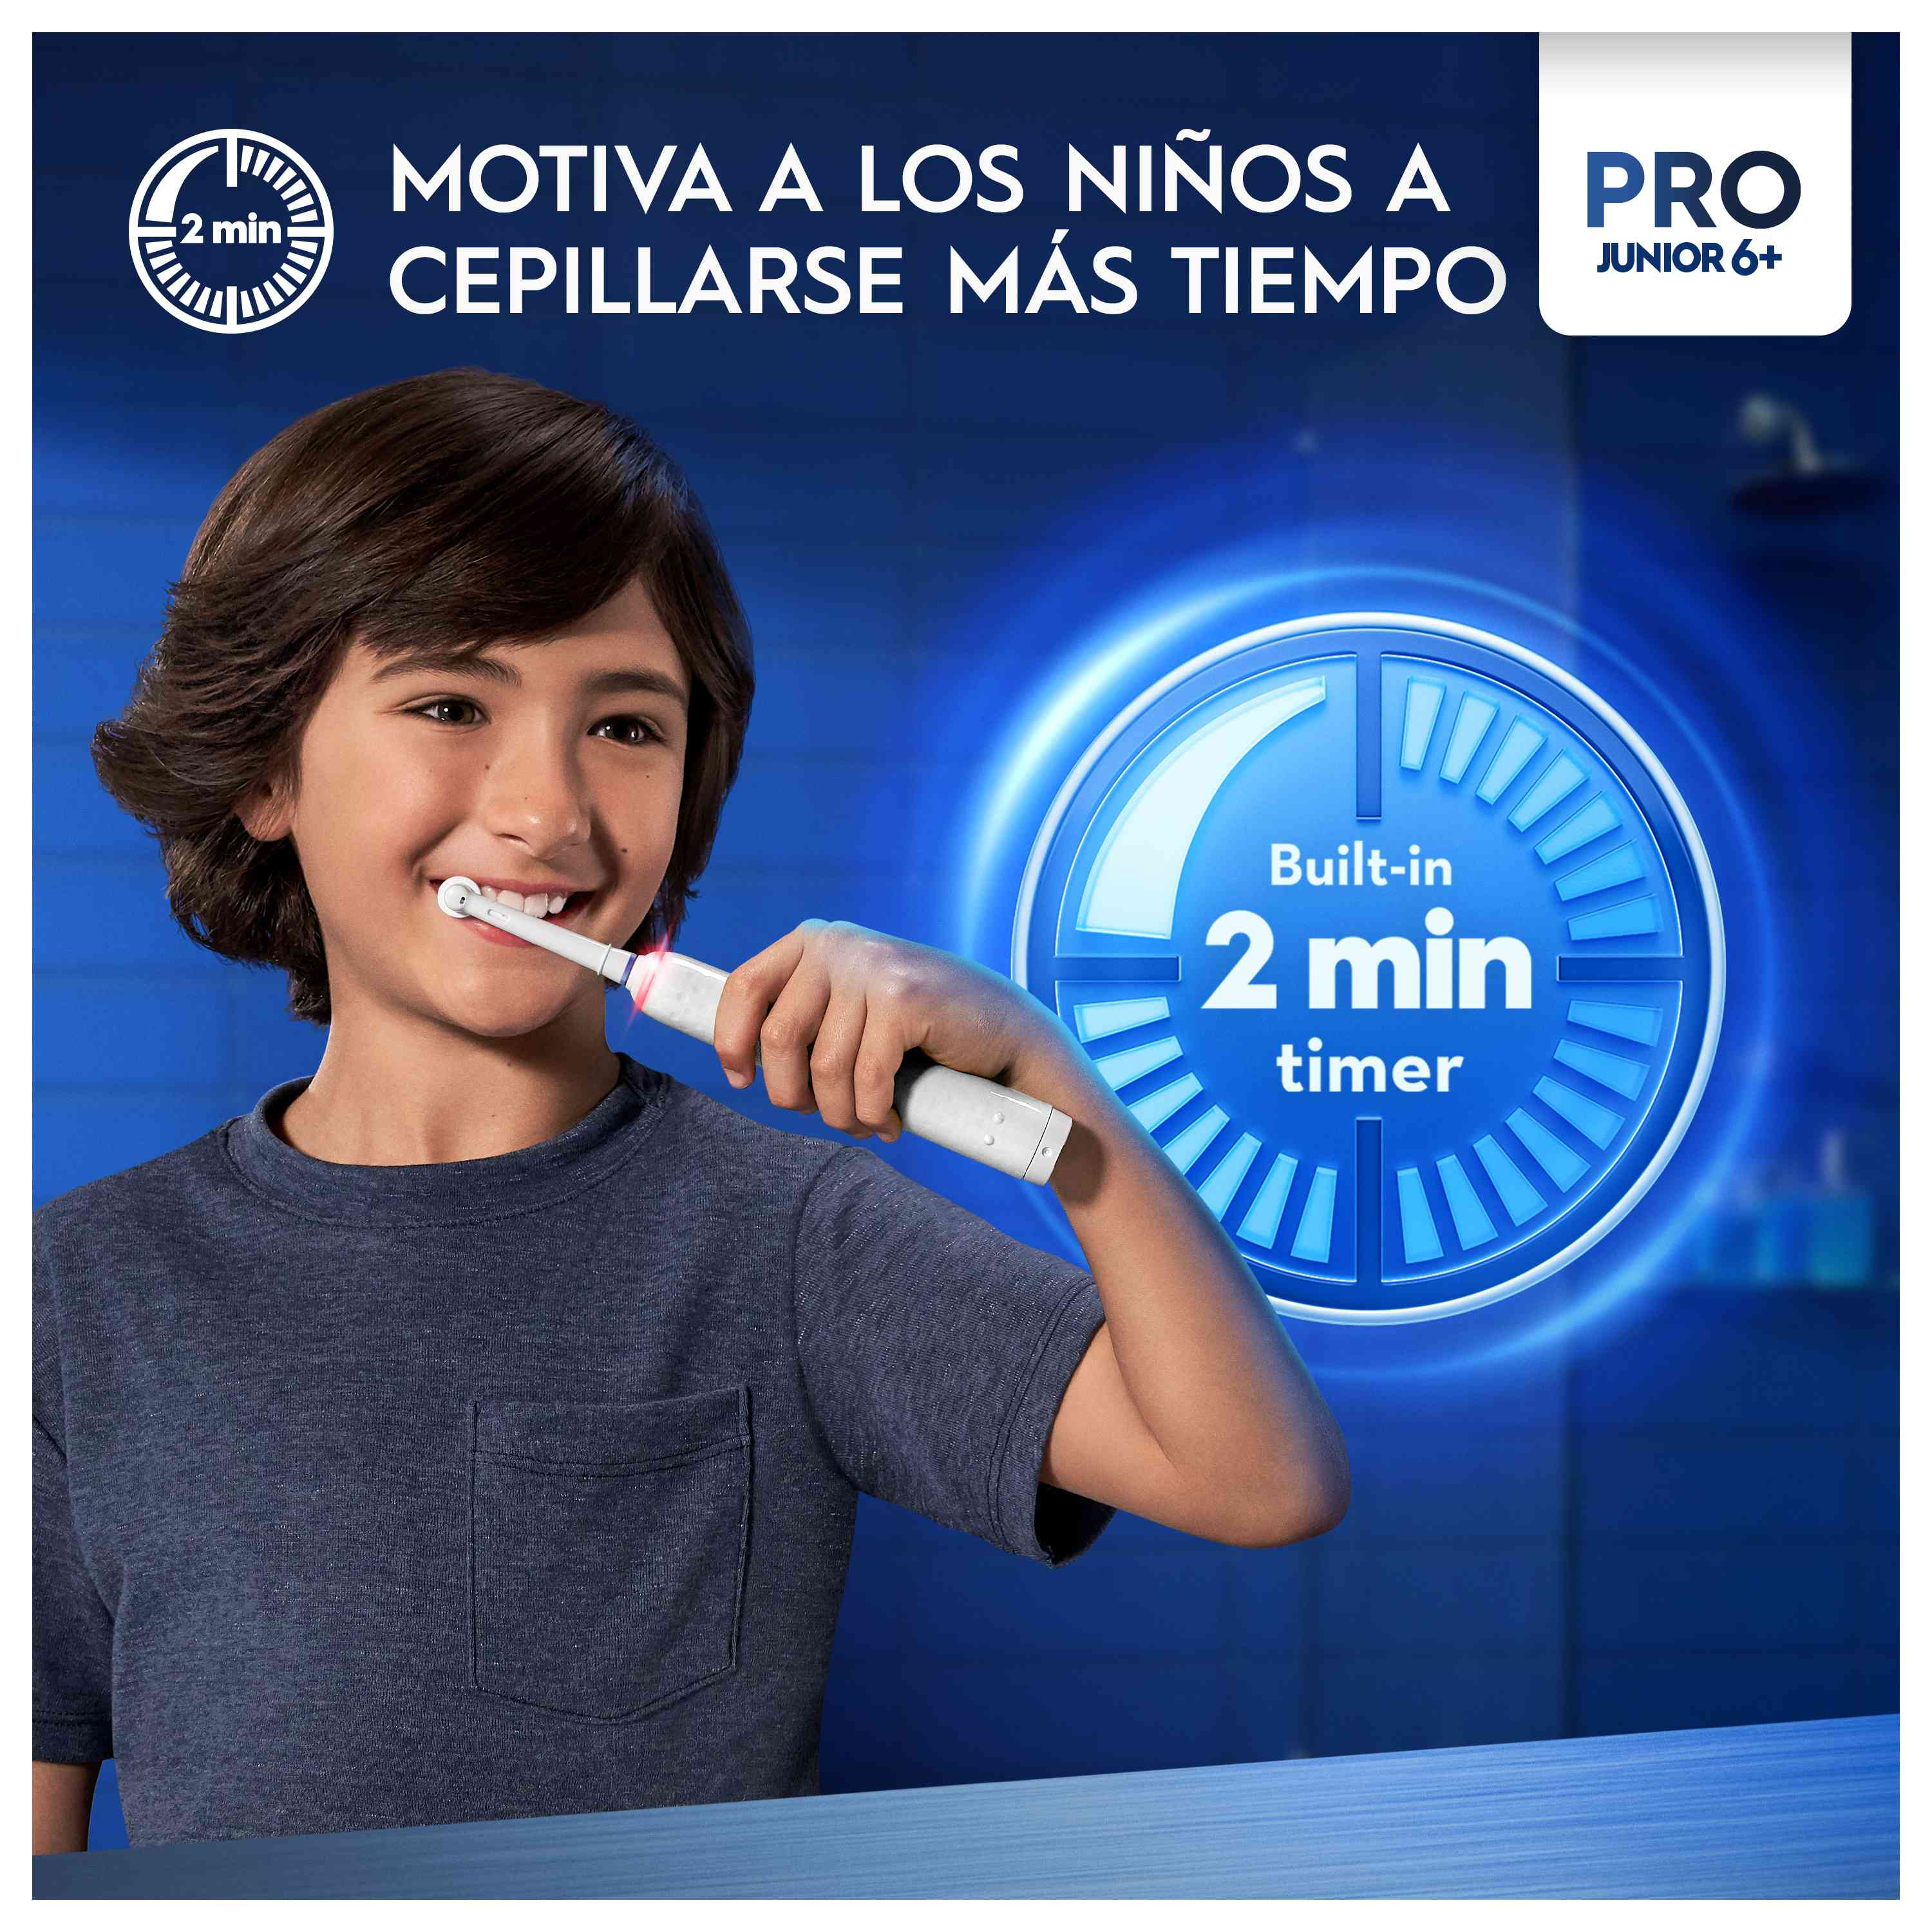 Oral-B Cepillo Eléctrico Pro 3 Junior +6 Años Star Wars